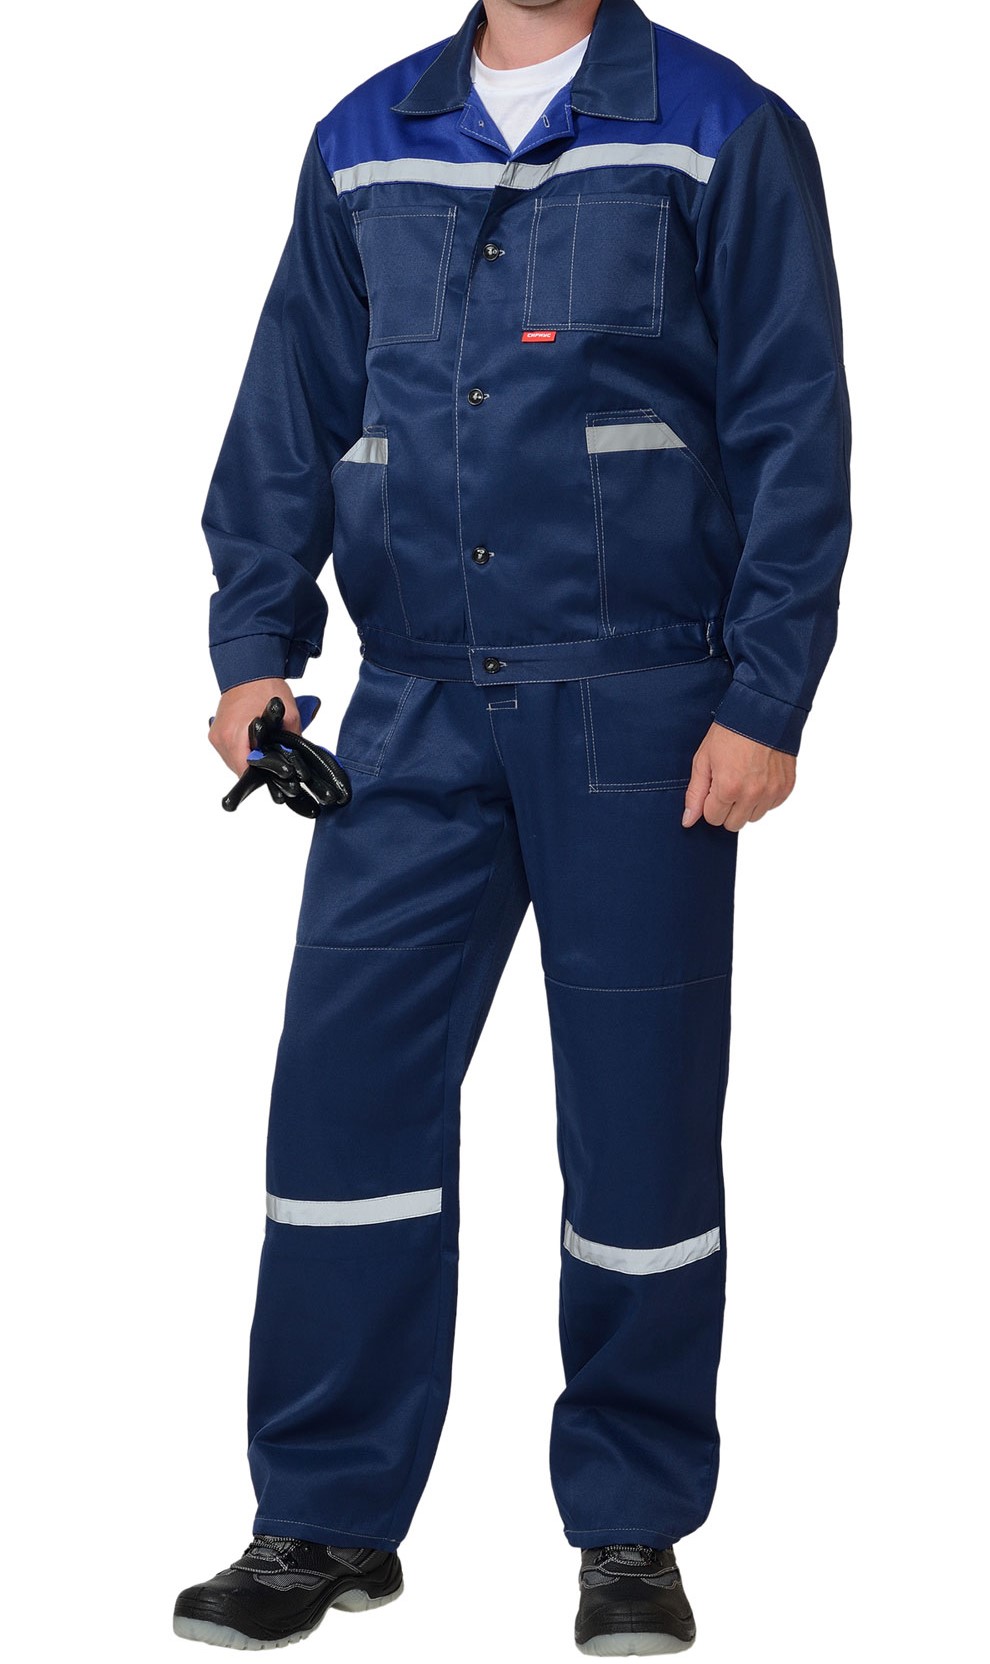 Костюм "С-Легионер" куртка, брюки / куртка, полукомбинезон (с СОП и без), разные цвета(синий, васильковый) - б/с - фото 3